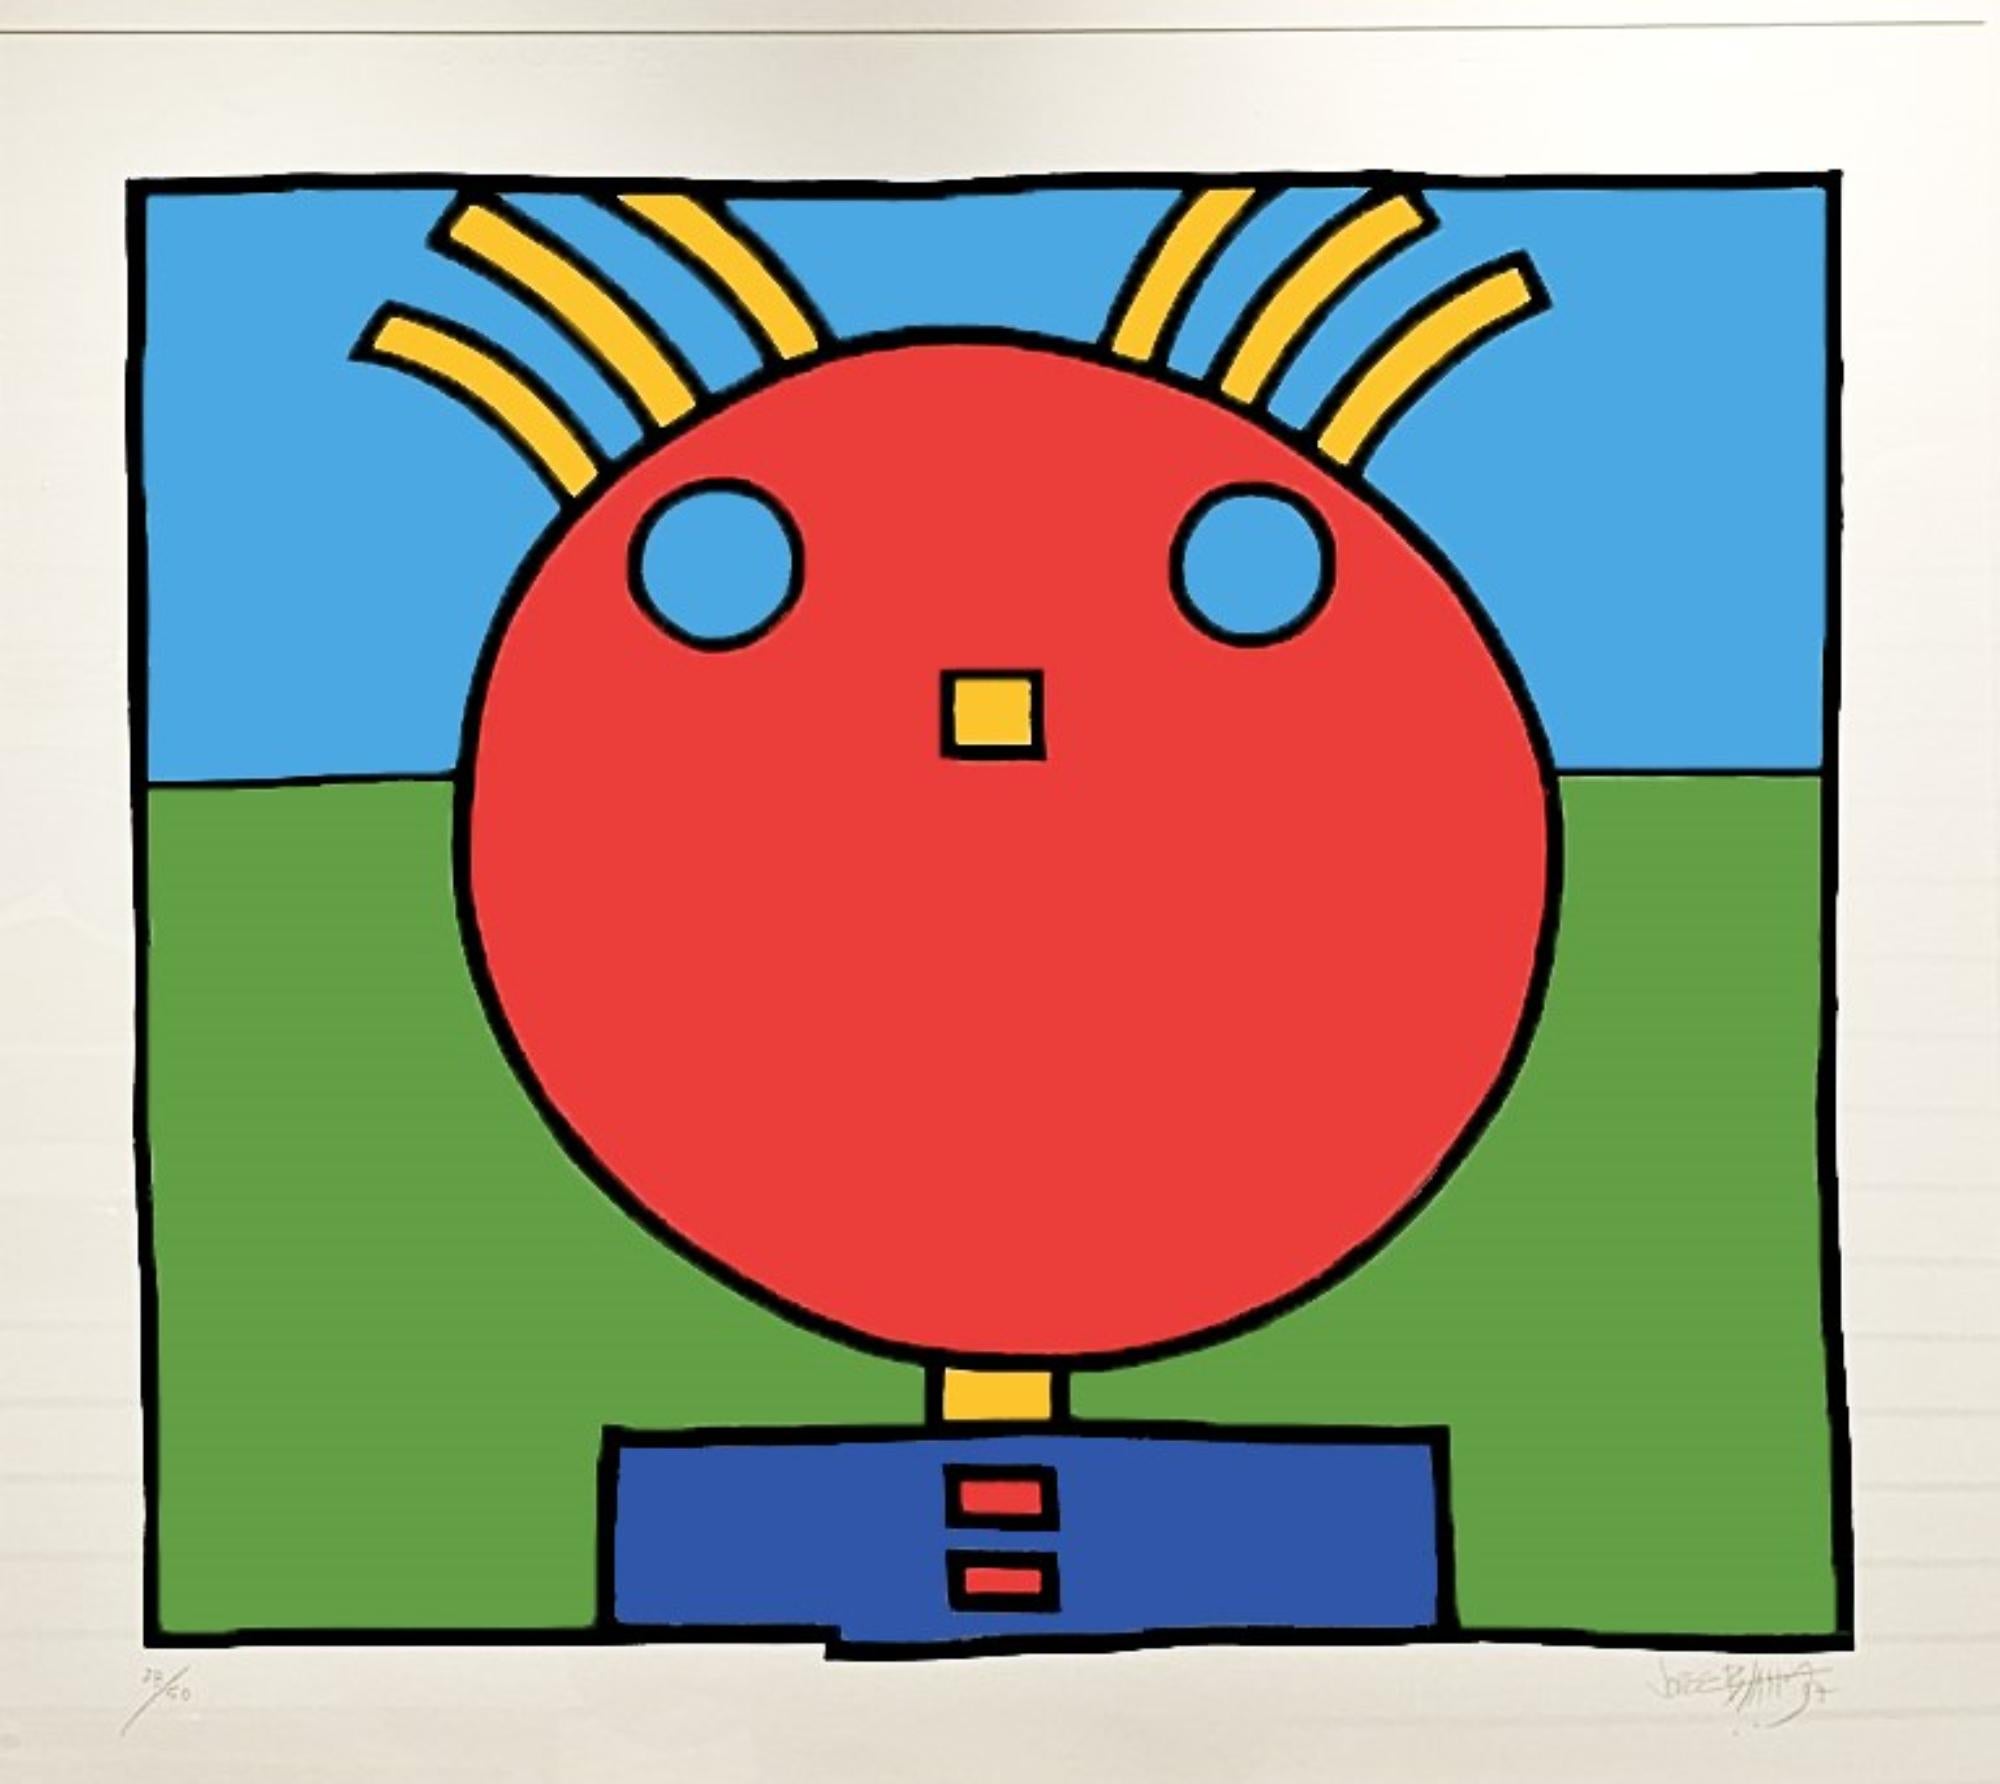 Jorge Blanco (*1945) Amerikaner, Künstlernachweis. Es handelt sich um ein rotes Gesicht mit blauen Augen, gelben Haaren, gelber Nase und einem blauen Hemd mit roten Knöpfen und einem blau-grünen Hintergrund. Titel: 